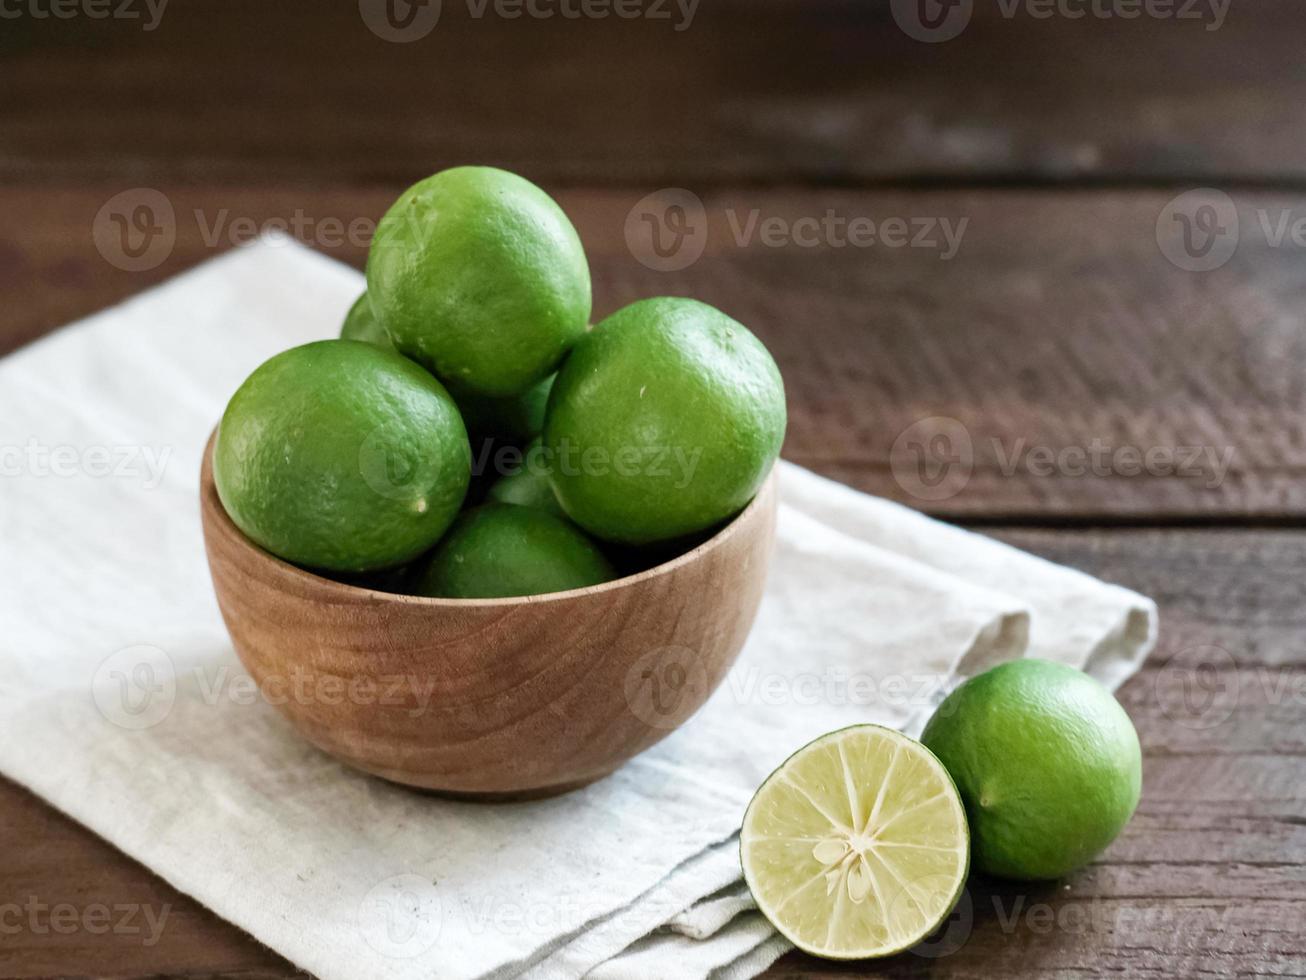 agrumes de citron vert frais dans un bol en bois sur la table. photo